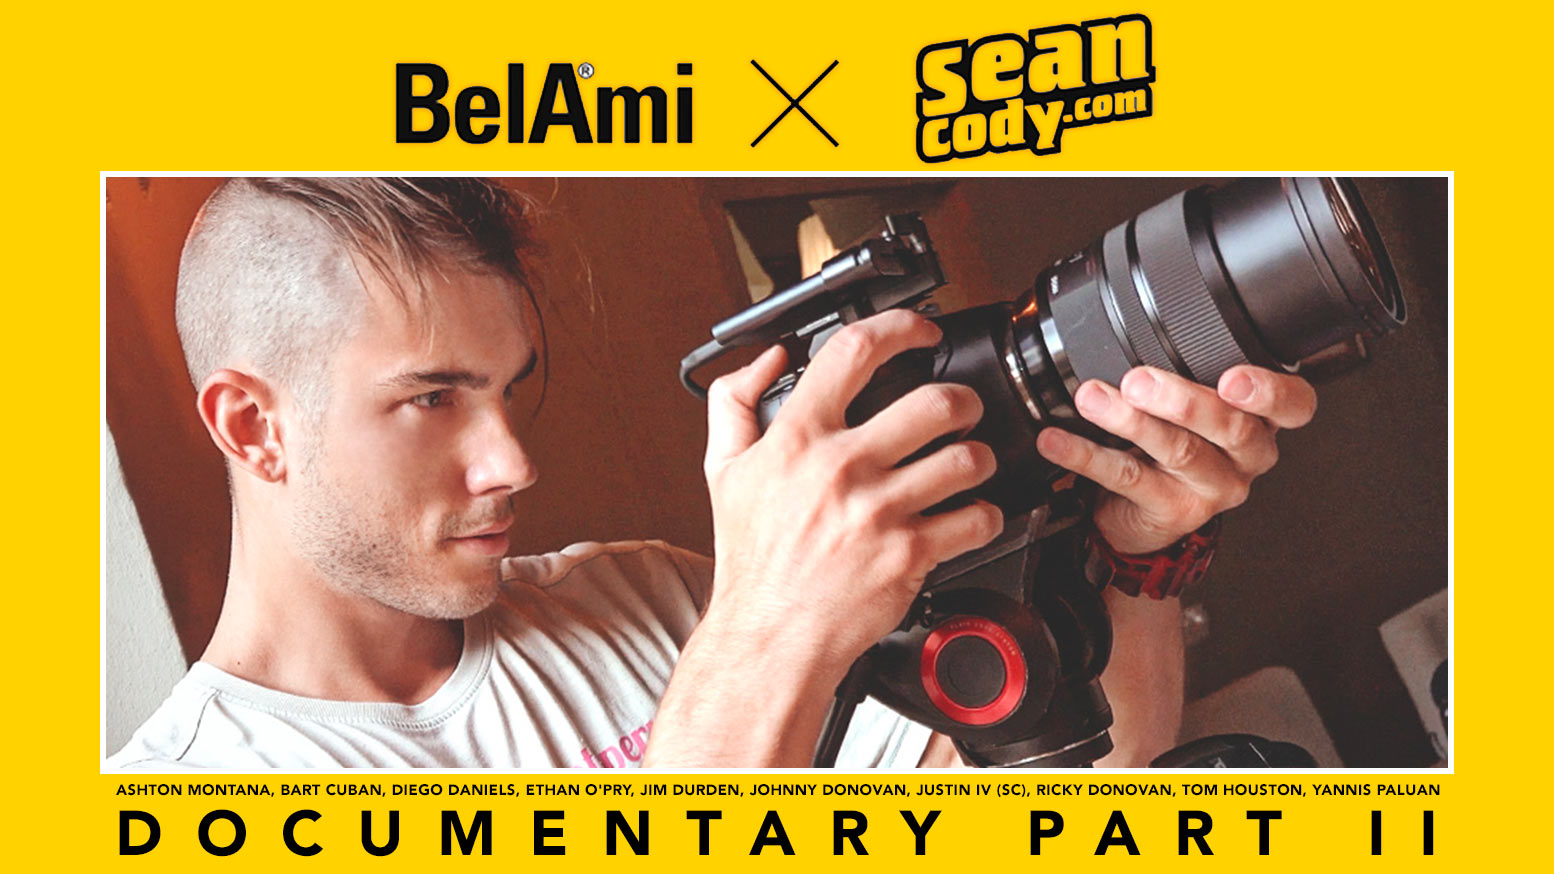 Bel Ami x Sean Cody Documentary, Part 2